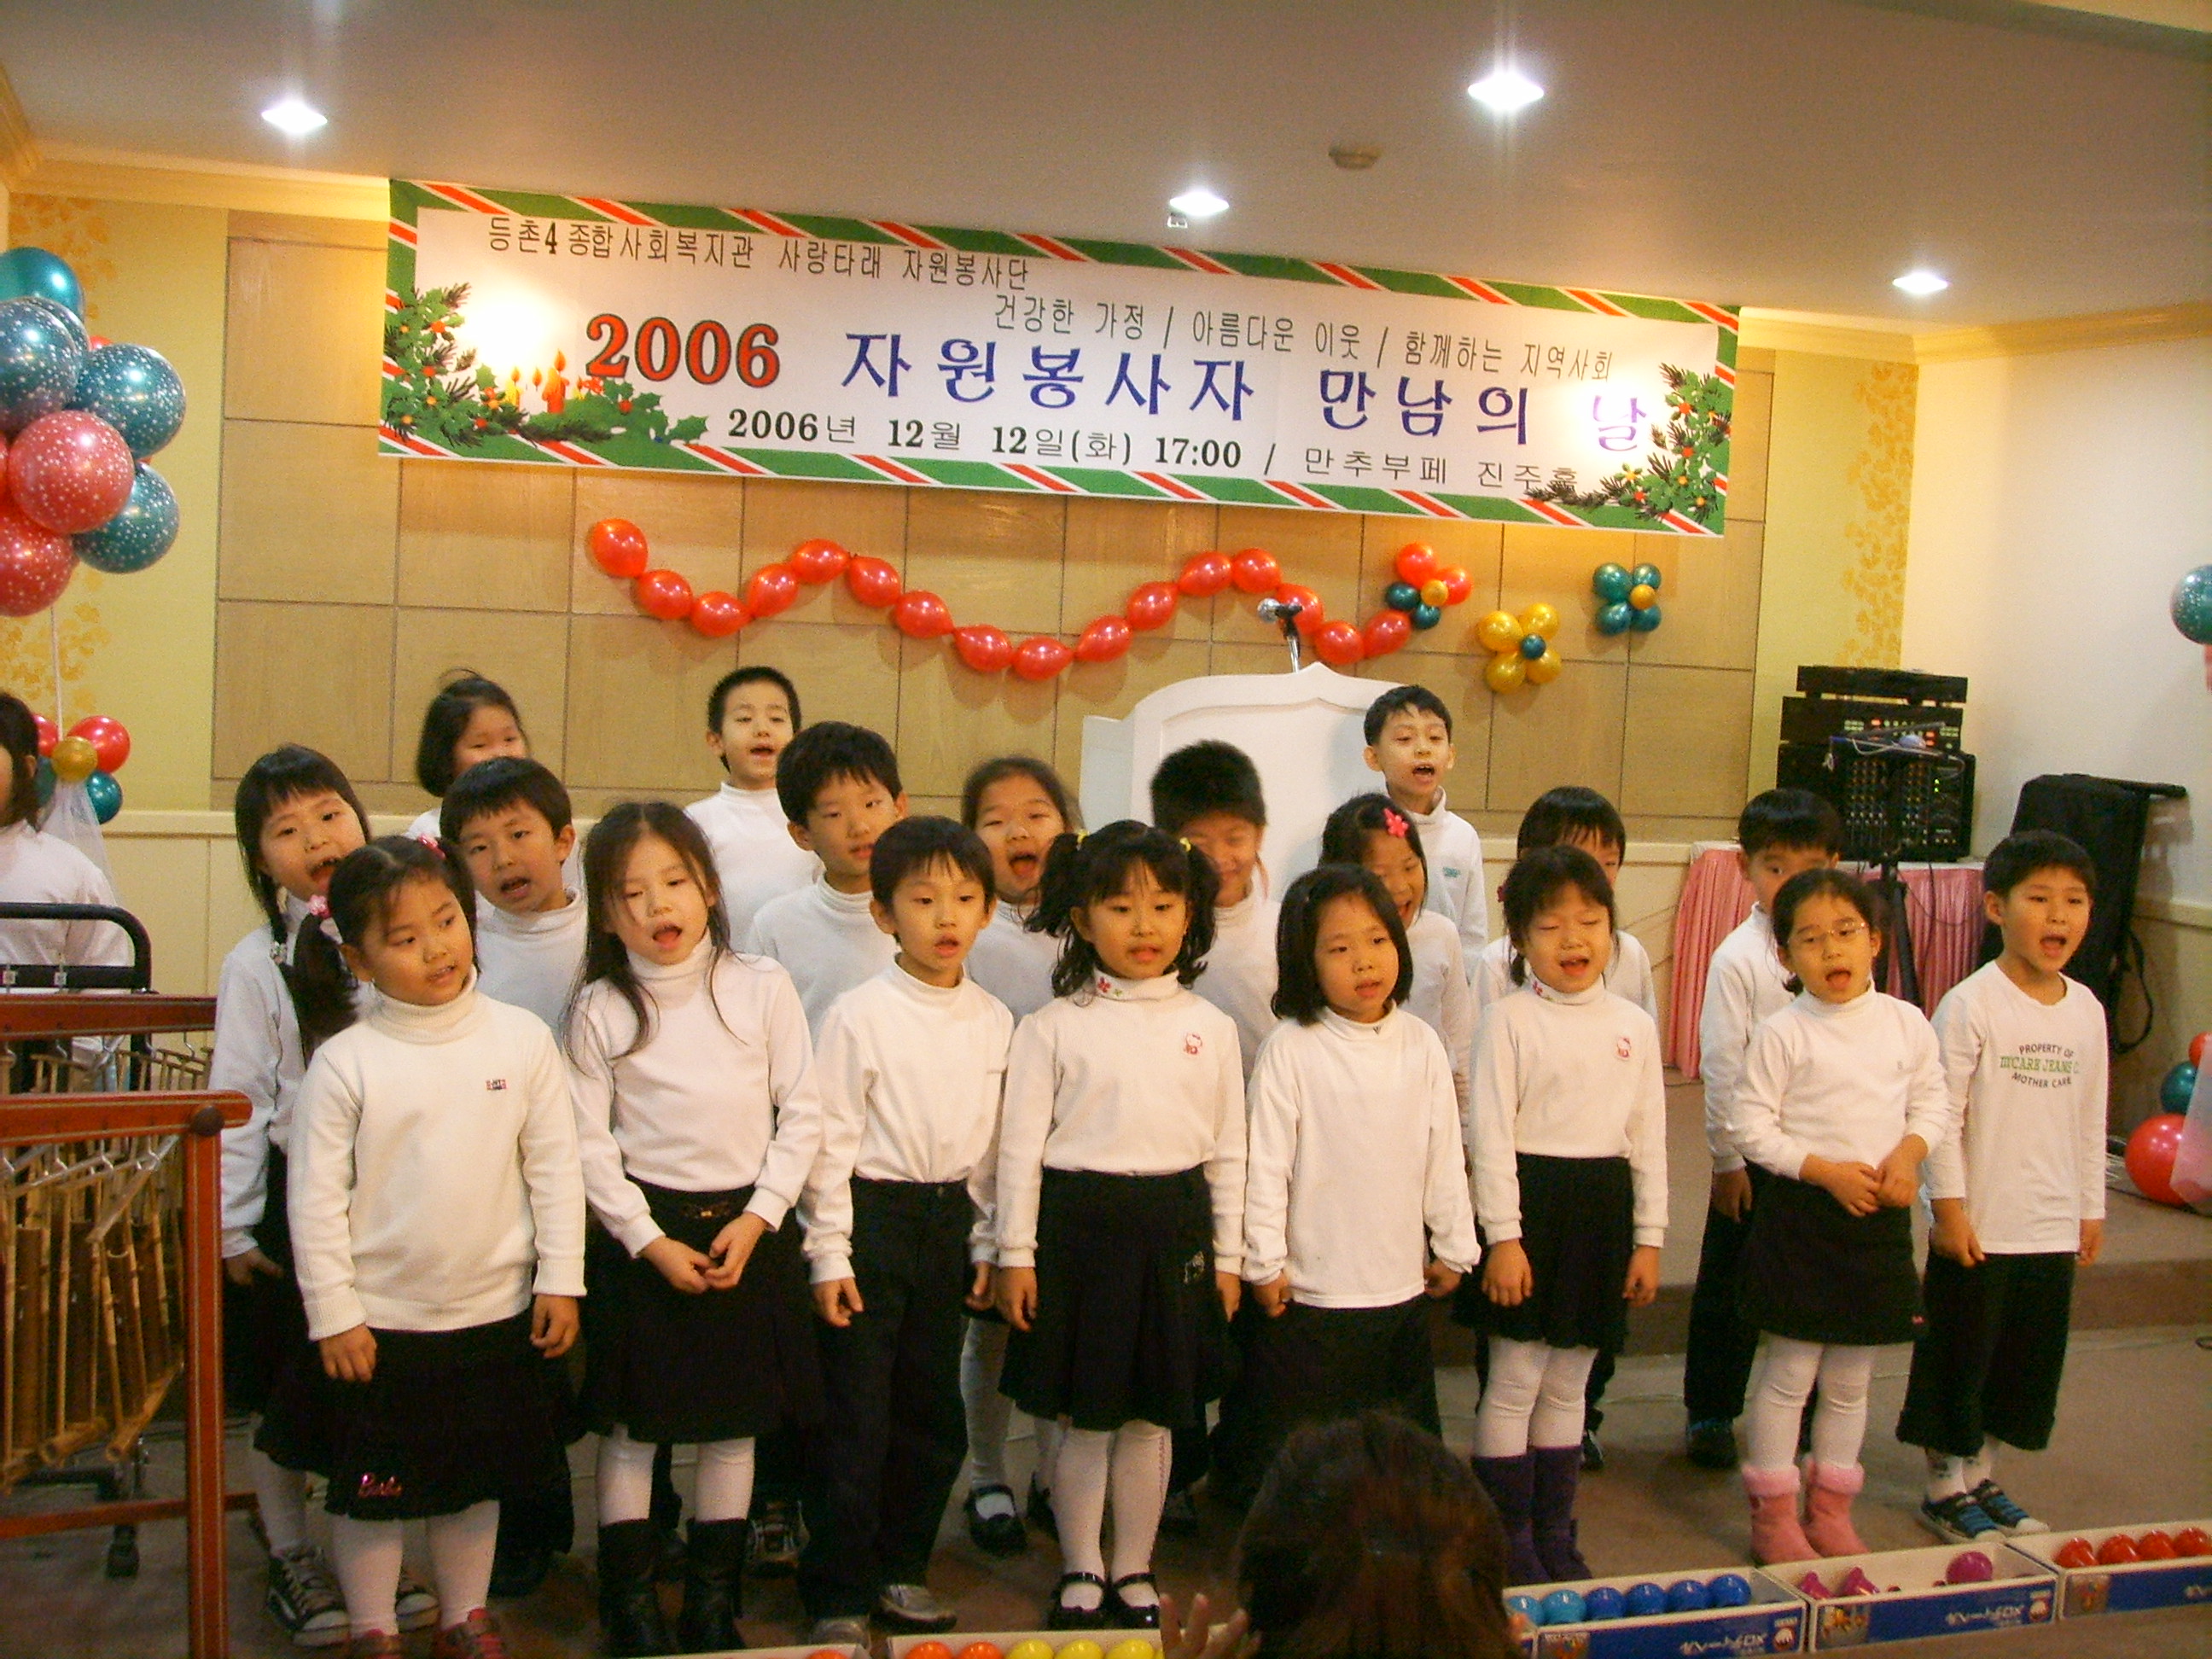 2006자원봉사만남의날 아이들의 노래 부르기